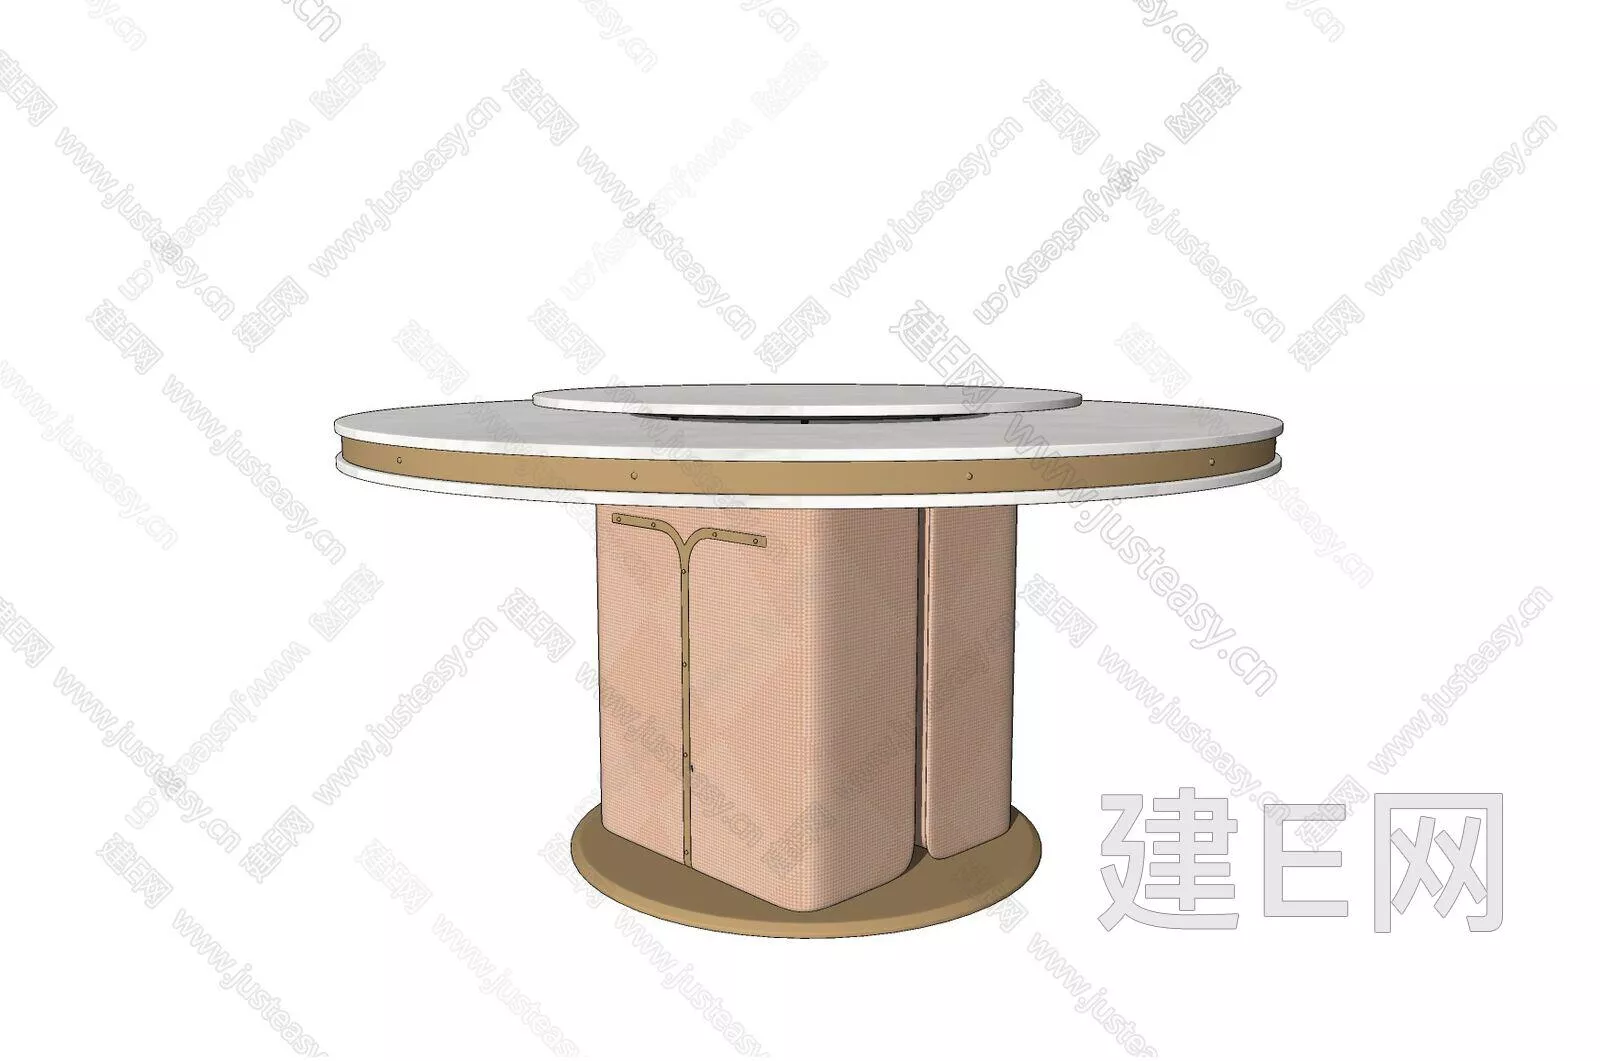 EUROPE DINING TABLE SET - SKETCHUP 3D MODEL - ENSCAPE - 111035896